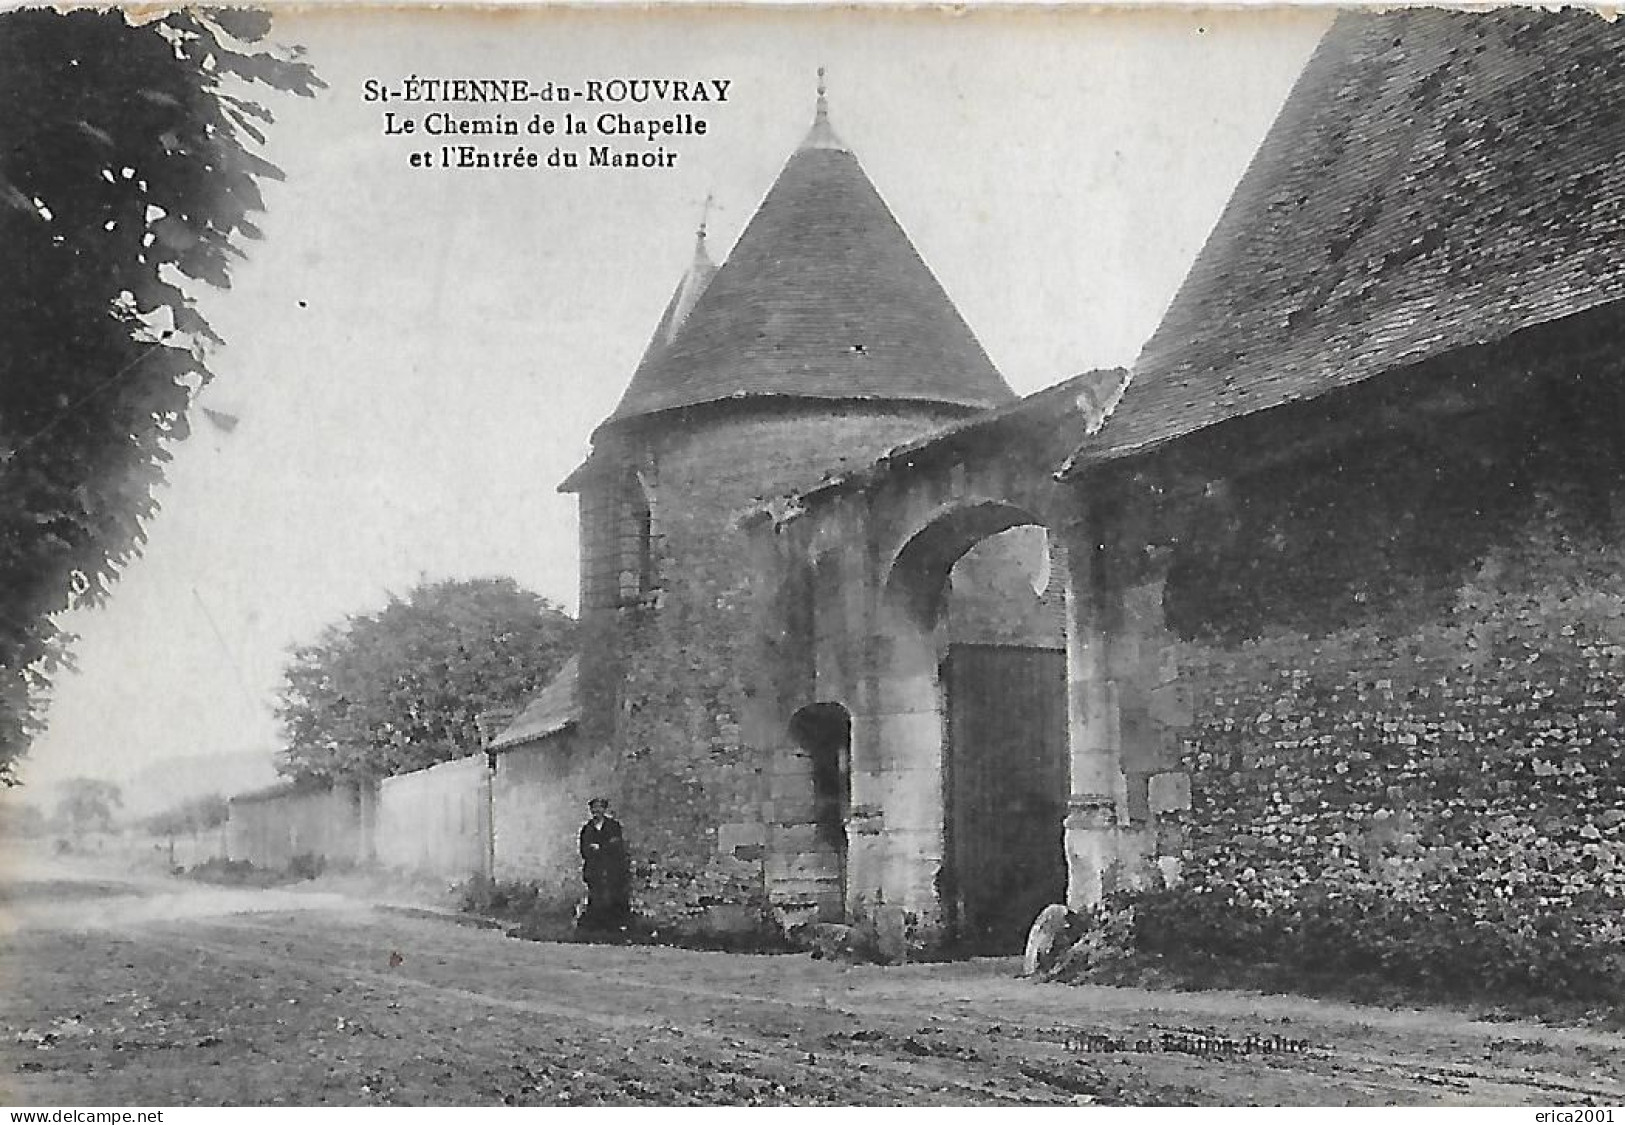 Saint Etienne Du Rouvray. L'entrée Du Manoir Et Le Chemin De La Chapelle. - Saint Etienne Du Rouvray